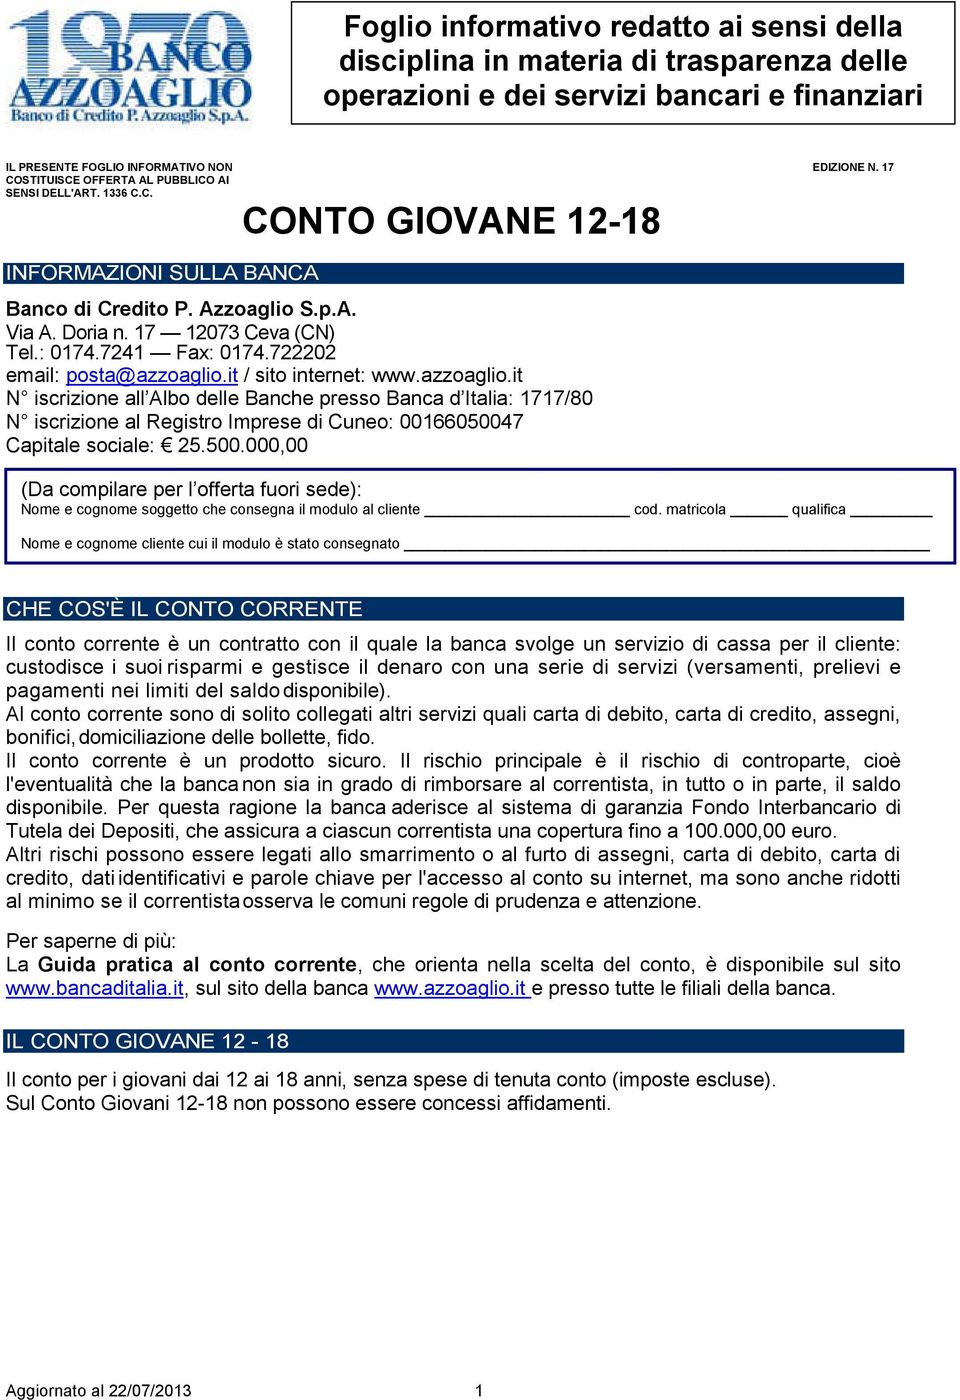 7241 Fax: 0174.722202 email: posta@azzoaglio.it / sito internet: www.azzoaglio.it N iscrizione all Albo delle Banche presso Banca d Italia: 1717/80 N iscrizione al Registro Imprese di Cuneo: 00166050047 Capitale sociale: 25.